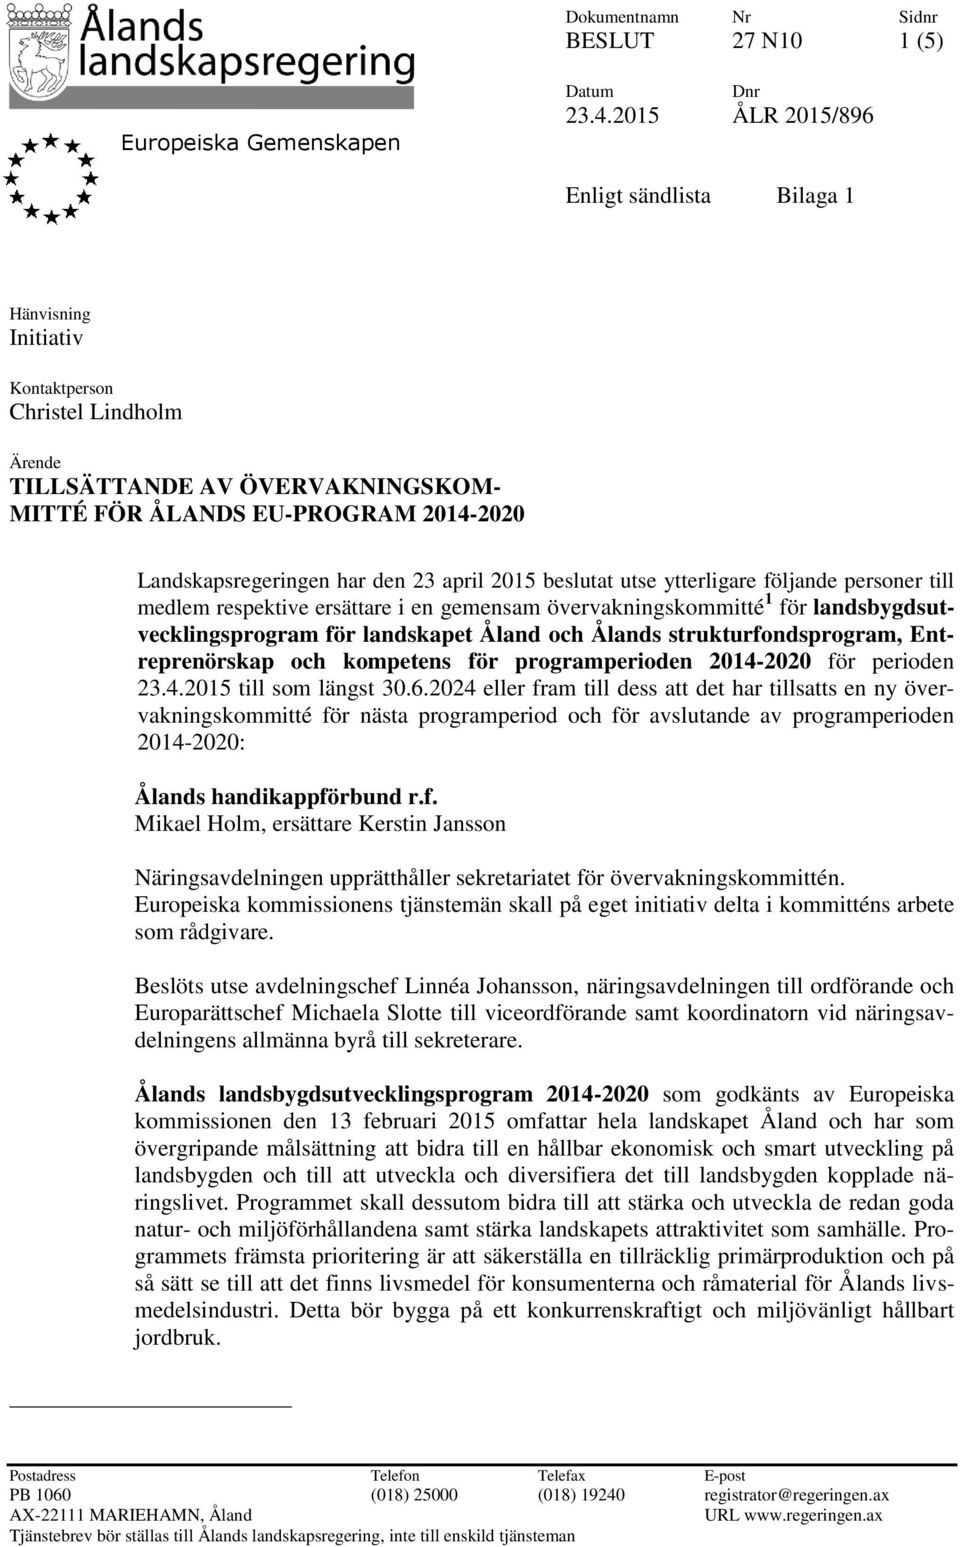 den 23 april 2015 beslutat utse ytterligare följande personer till medlem respektive ersättare i en gemensam övervakningskommitté 1 för landsbygdsutvecklingsprogram för landskapet Åland och Ålands